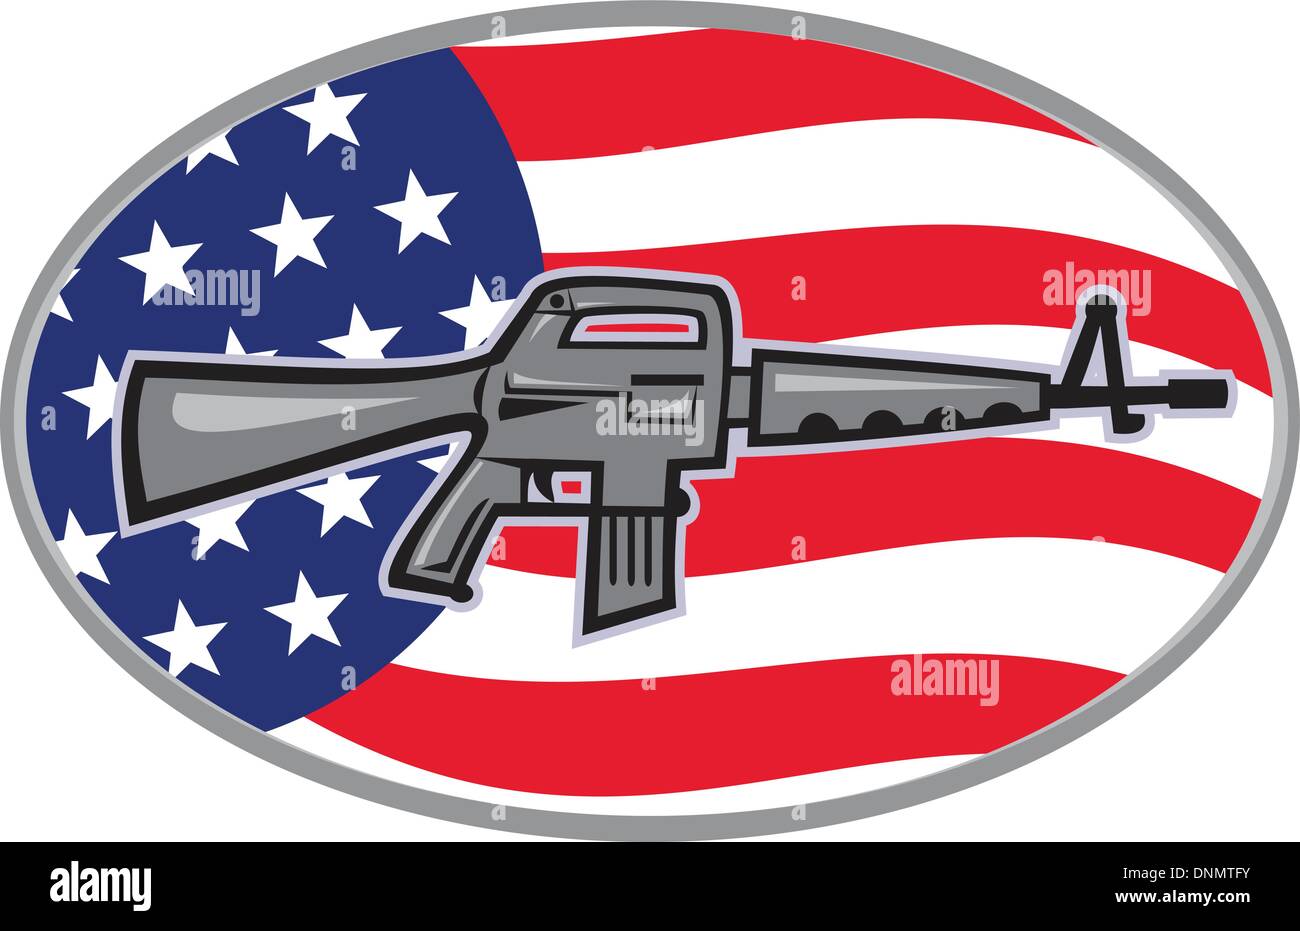 Abbildung von einem Colt AR-15 Armalite M-16 Sturmgewehr mit amerikanischen stars und Stripes flag gesetzt innen Ellipse von Seite betrachtet. Stock Vektor